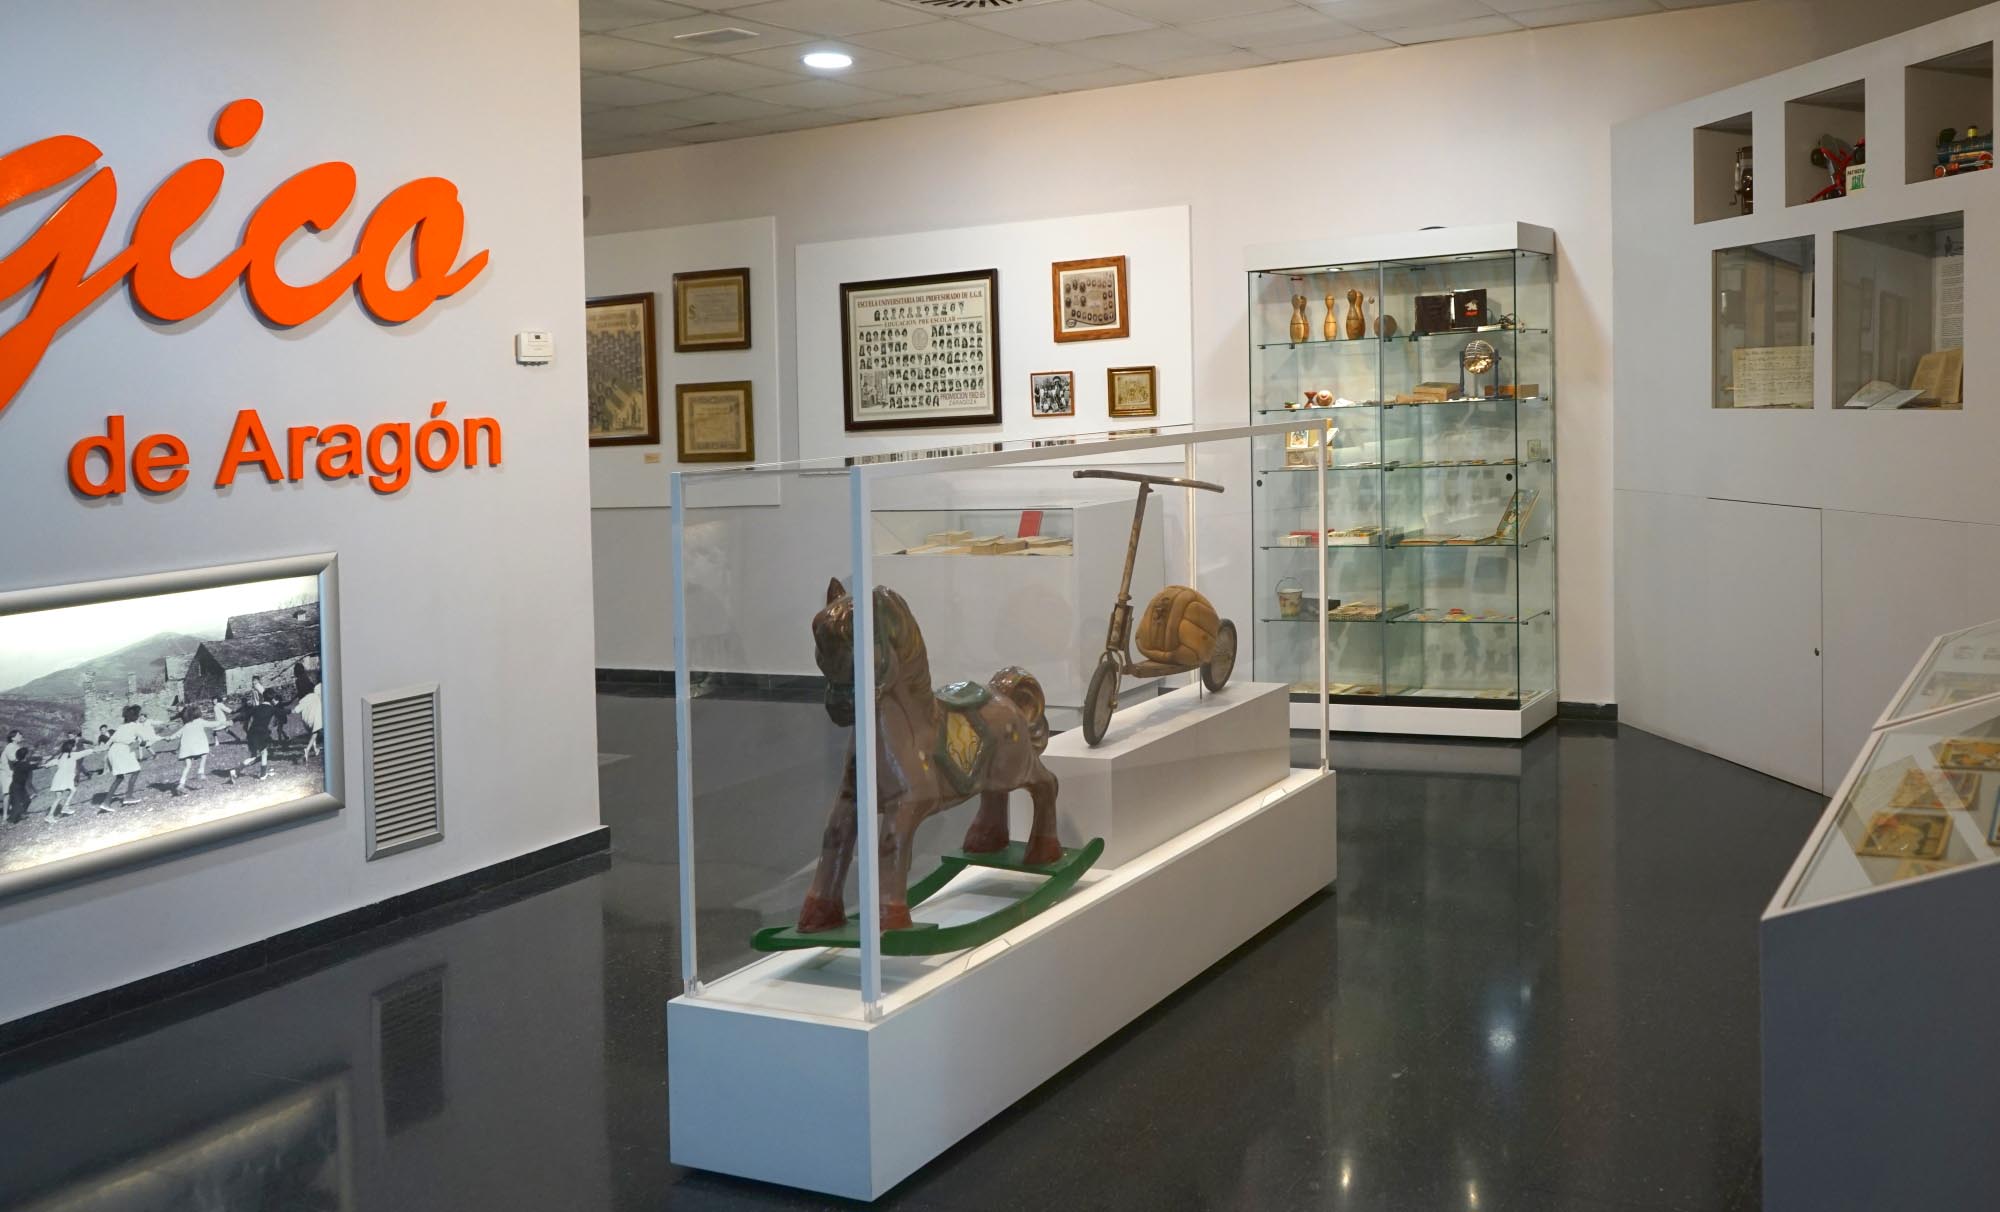 Sala 1. Foto: Archivo fotográfico del Museo Pedagógico de Aragón